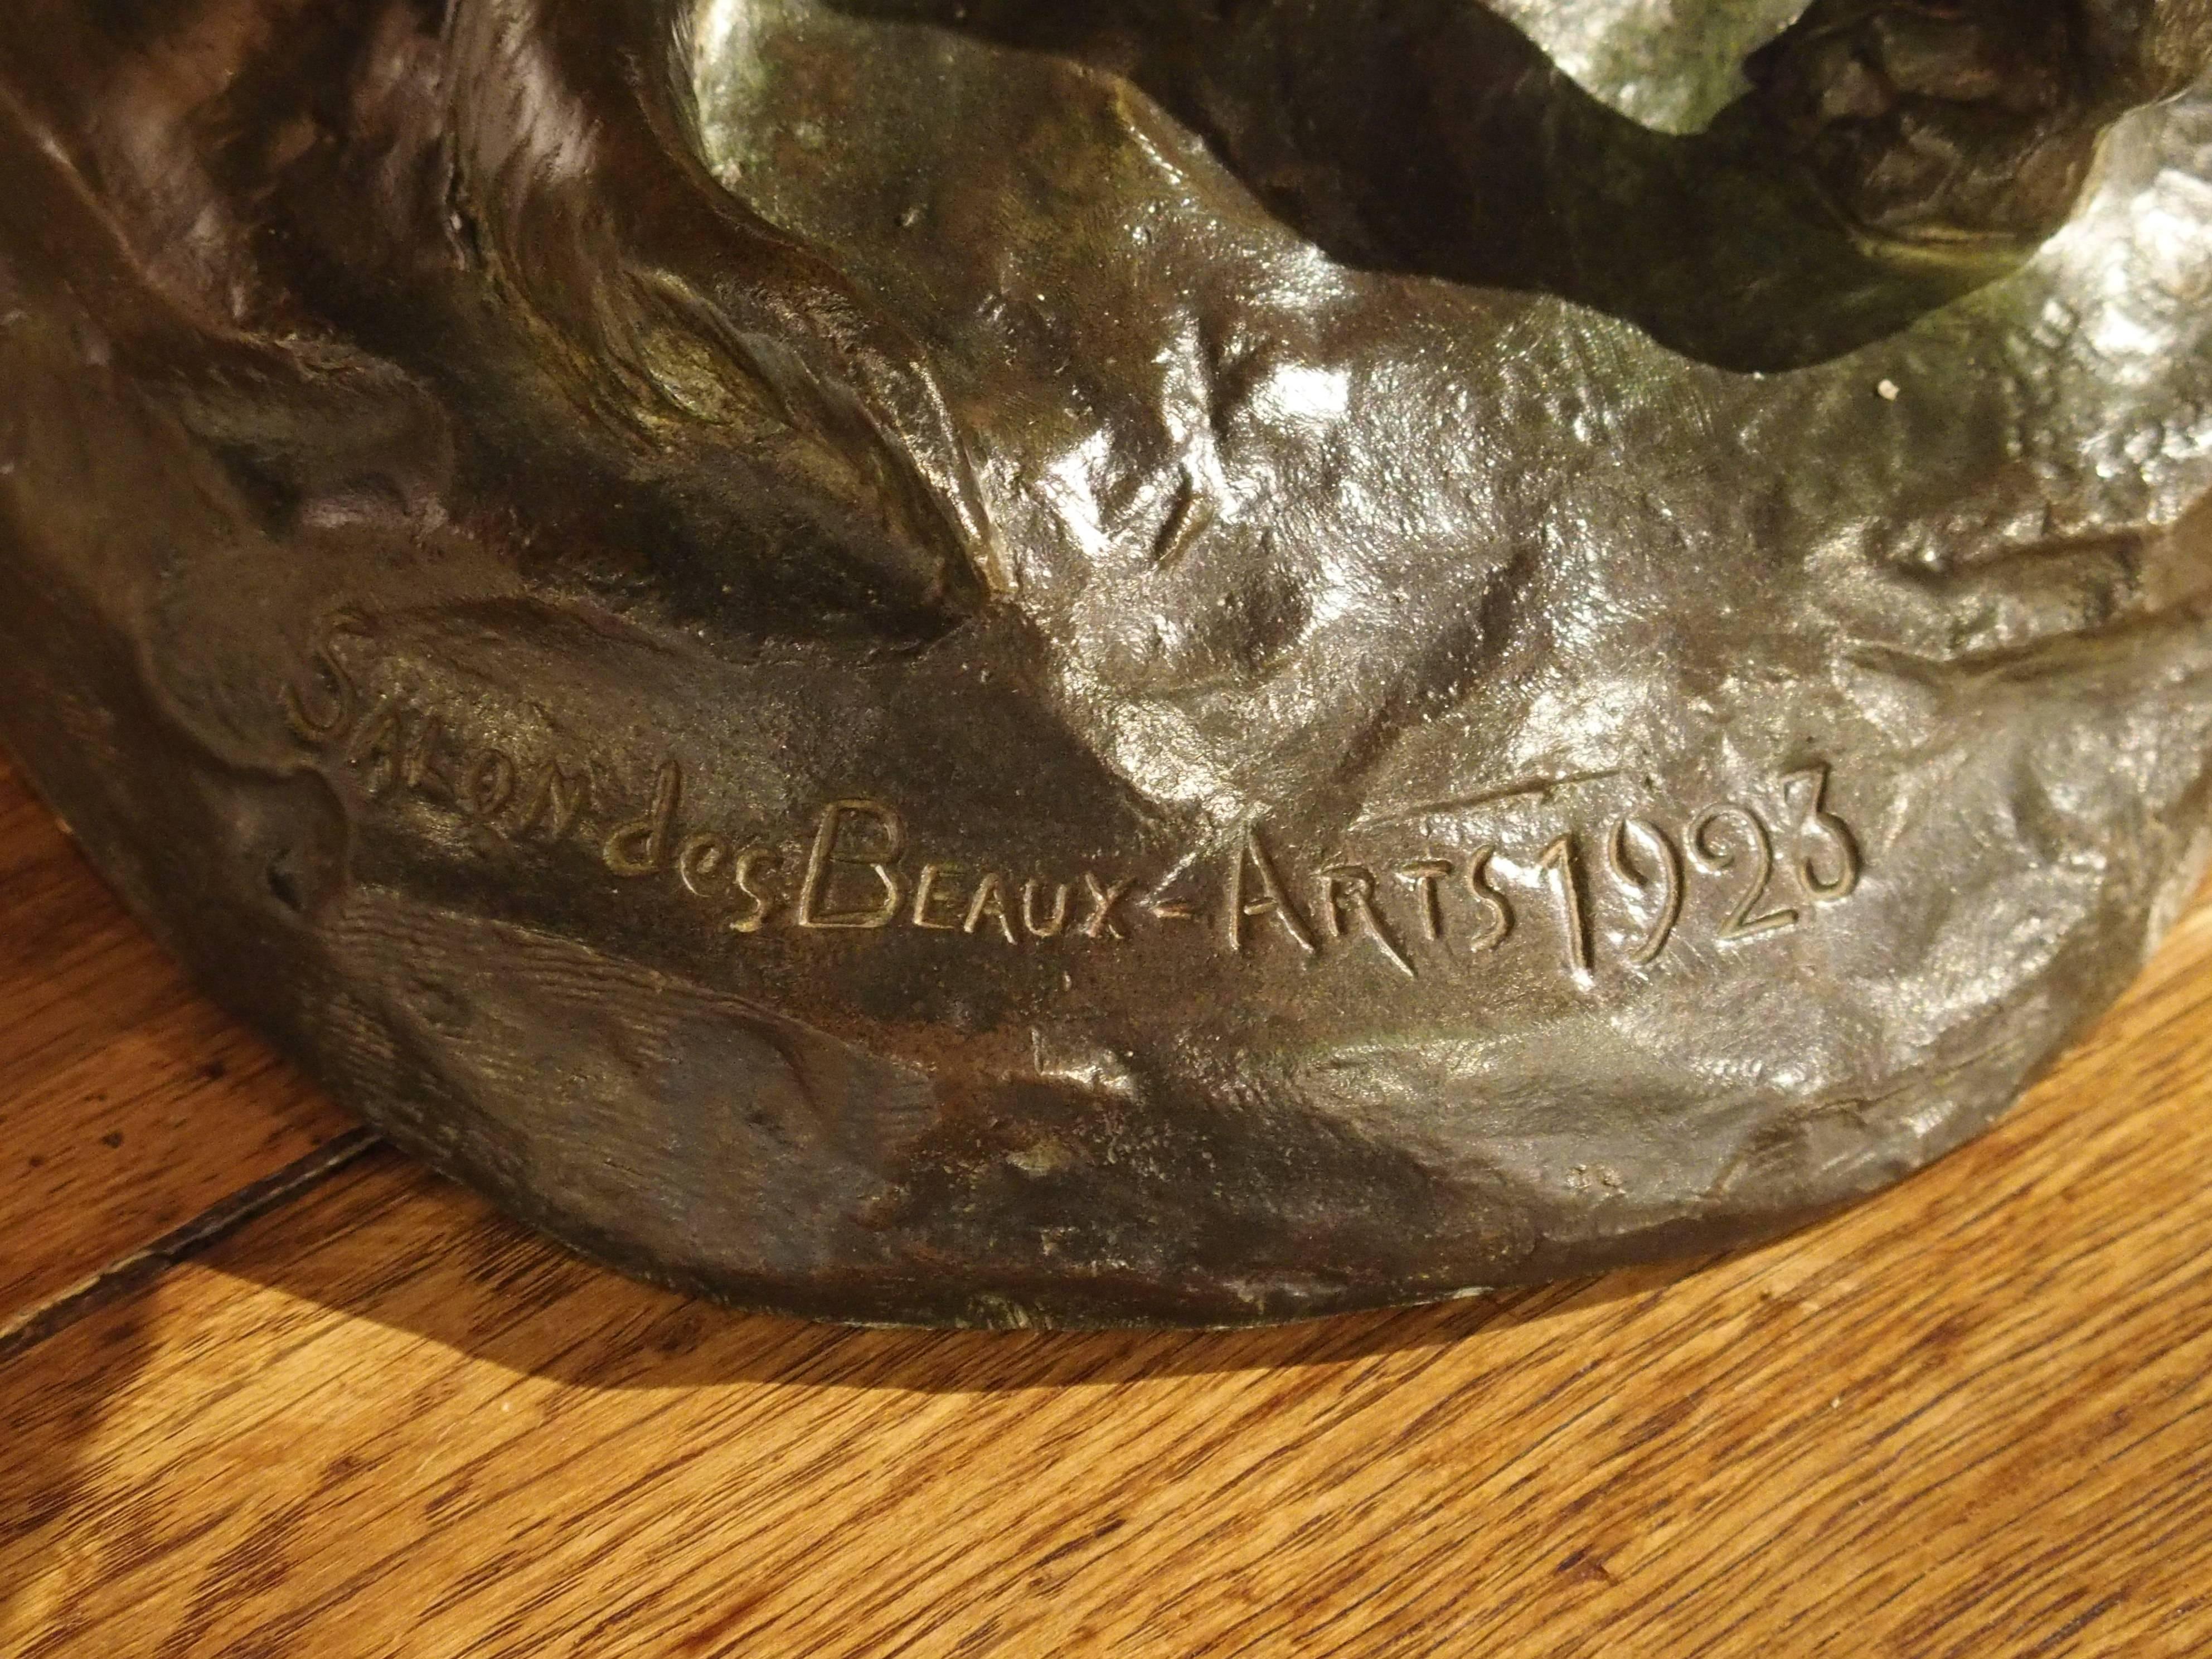 Ce superbe bronze français représentant deux bergers a été réalisé pour le Salon des Beaux-Arts de 1923 par R&R ART. La capacité de Varnier à sculpter les proportions, la musculature et surtout l'émotion est phénoménale. Les chiens sont sur un